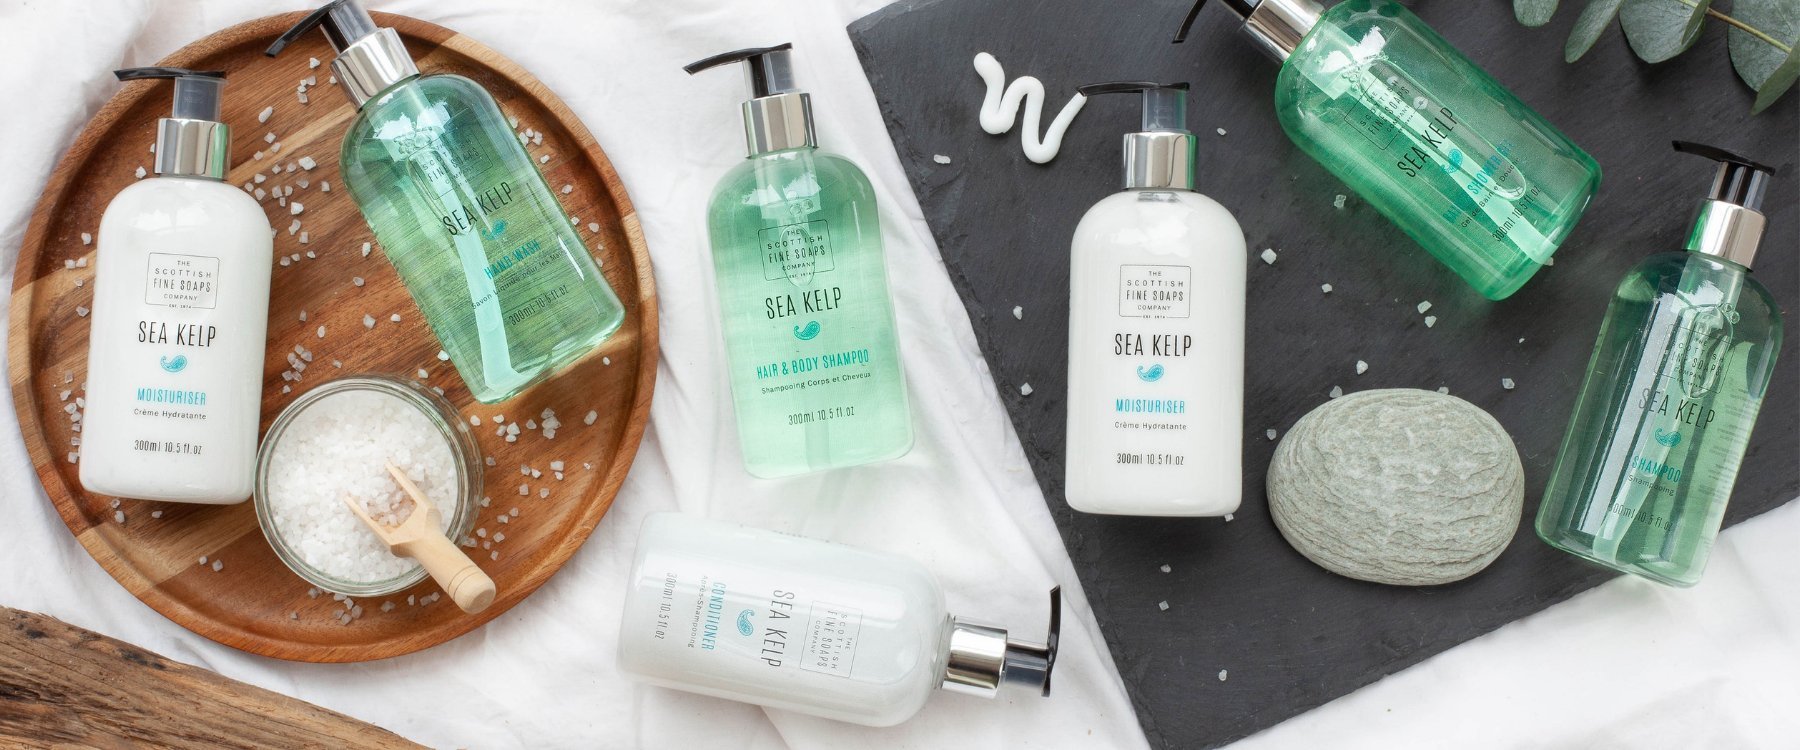 SCOTTISH FINE SOAPS SEA KELP, Leerflasche 300ml  für: Hair&Body Shampoo 5 Liter Kanister